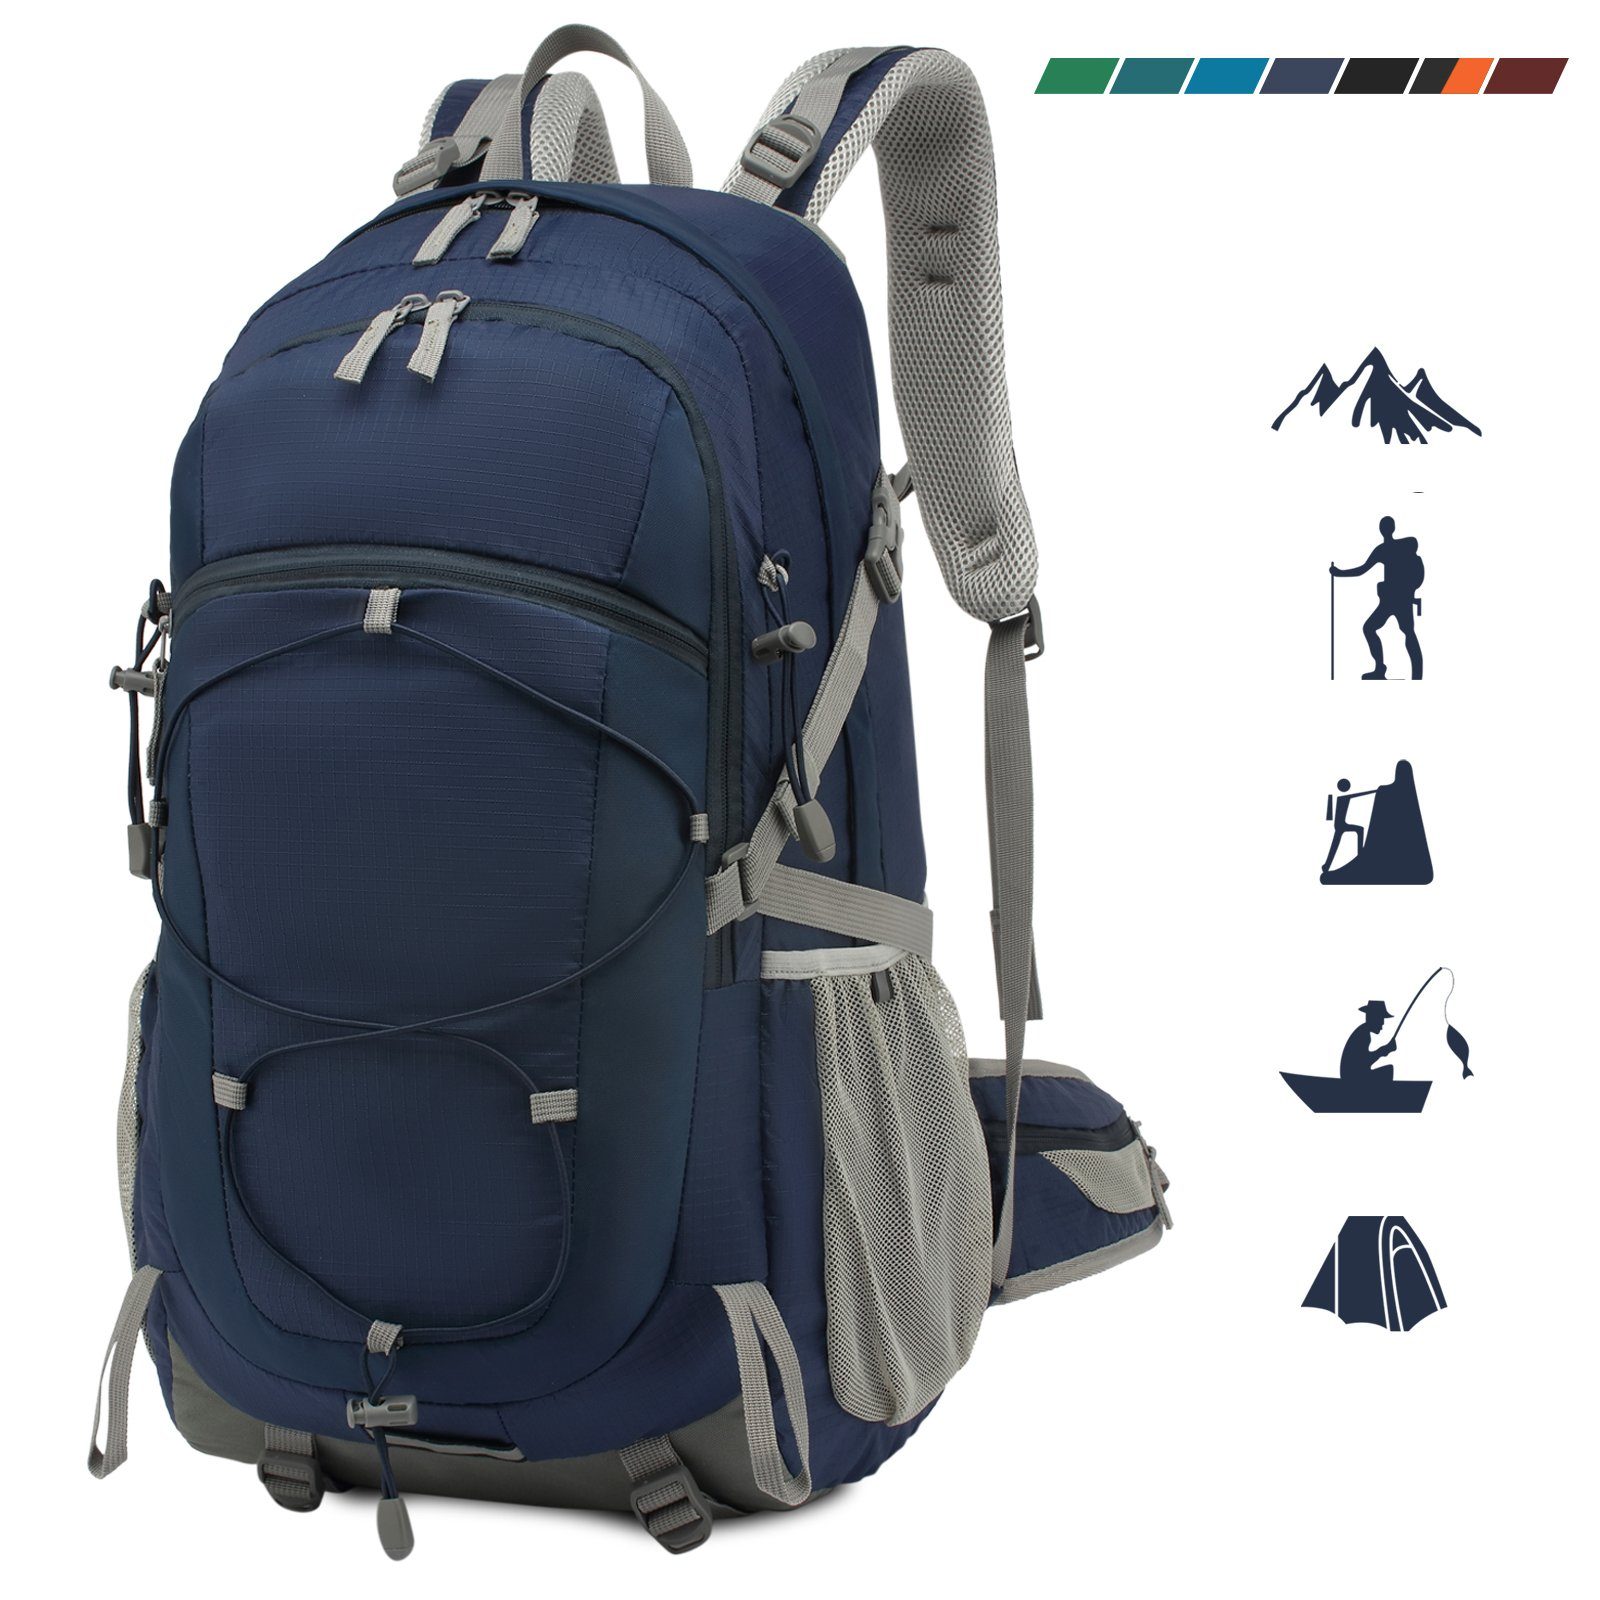 TAN.TOMI Kletterrucksack 40L Outdoor-Rucksack mit Regenschutzhülle (Ausgestattet mit 1-Rucksack und 1-Regenabdeckung, Einschließlich Regenschutz), Kompressionsgurte für Trekkingstöcke, Schlafsack, Decke etc. Navy blau